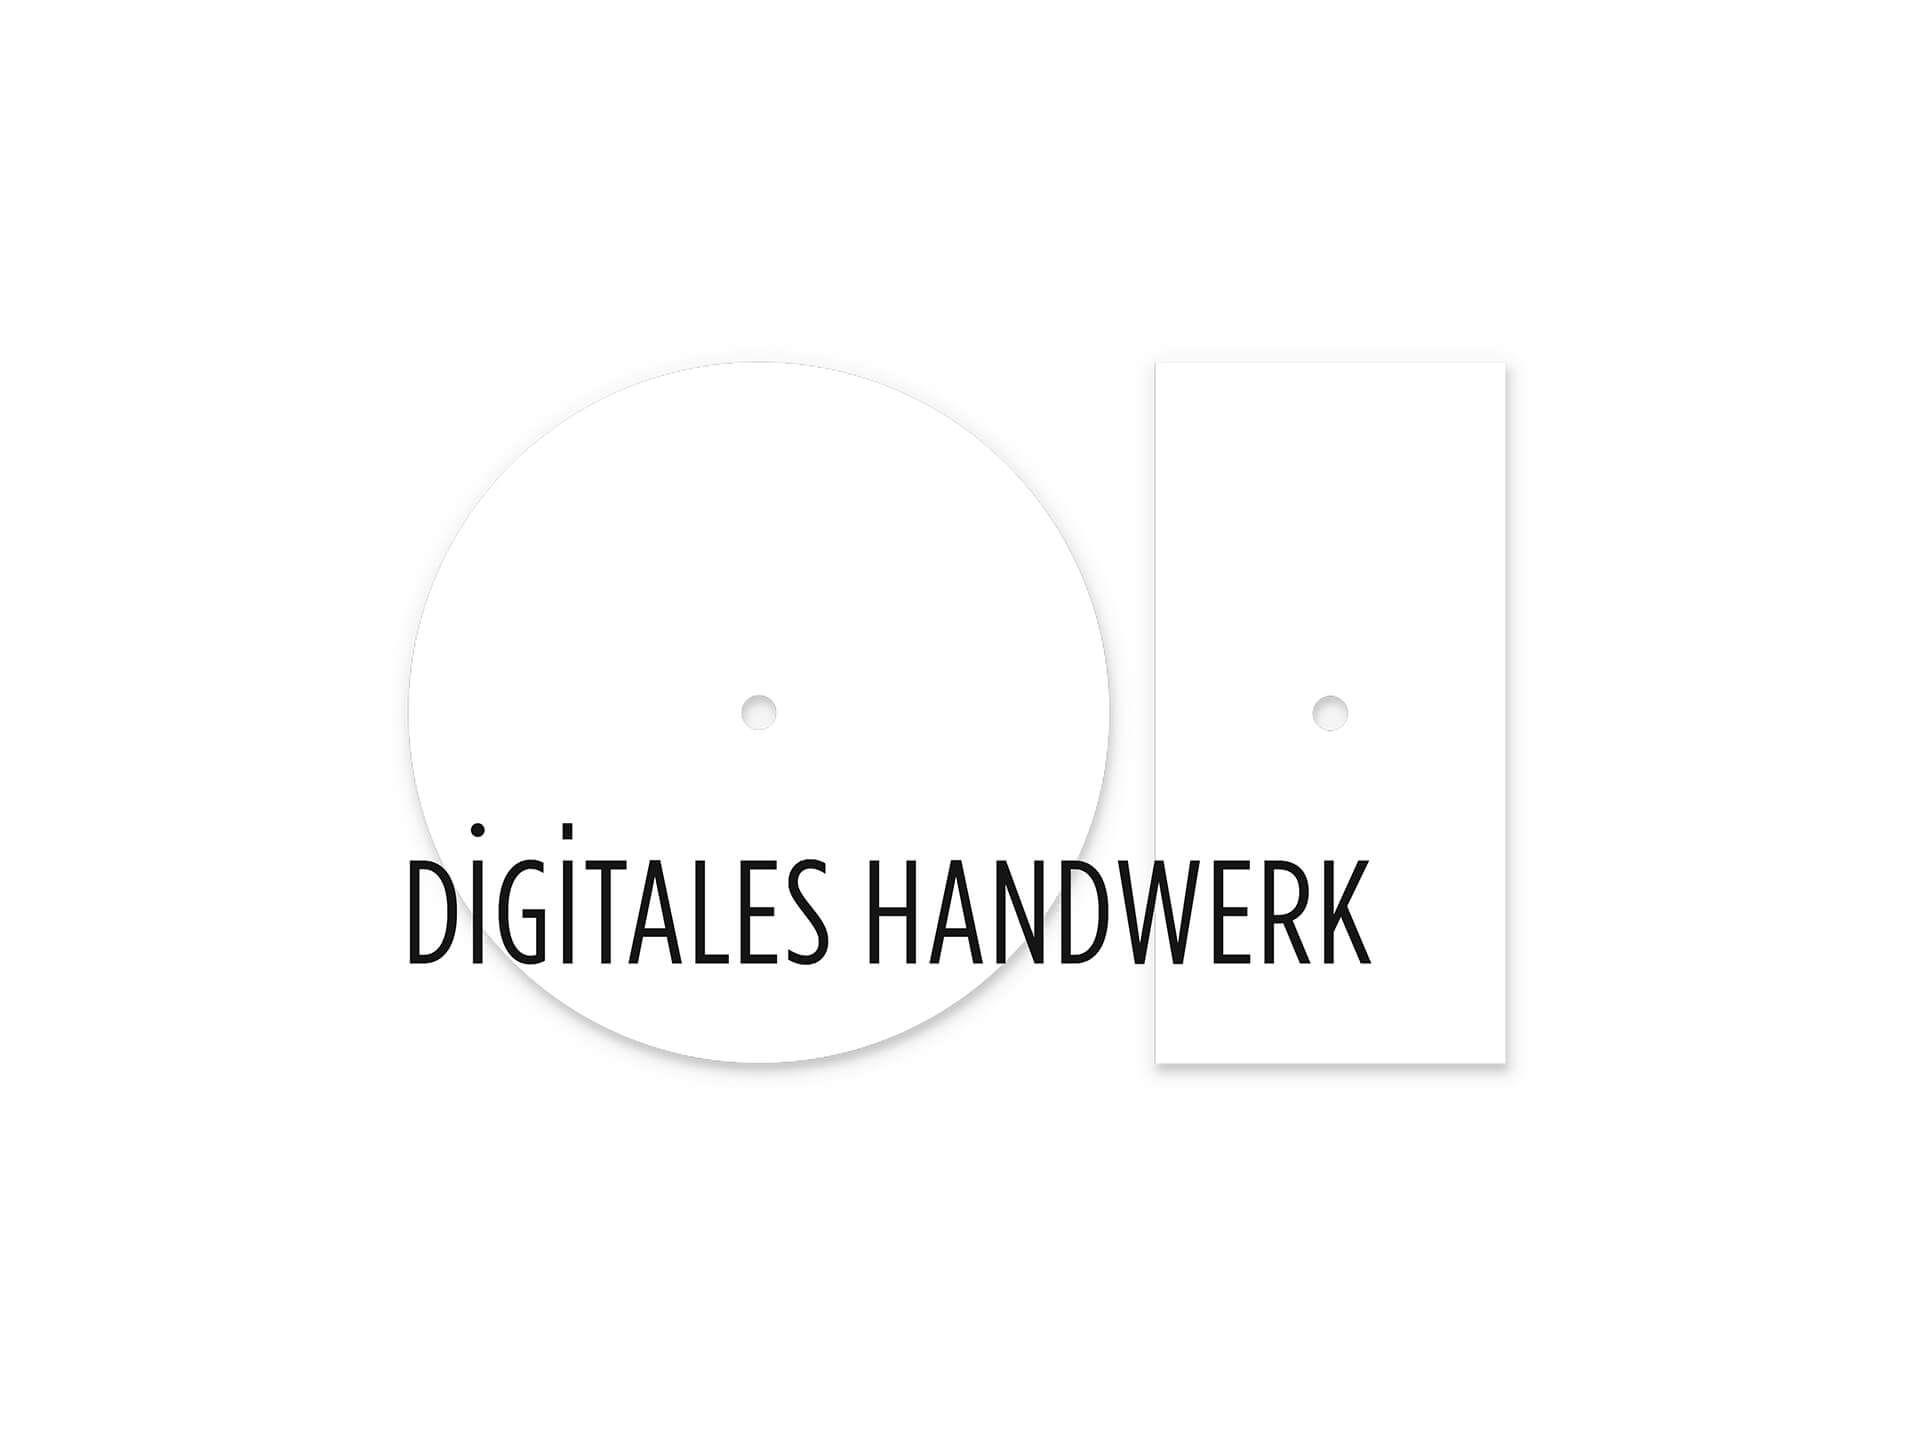 (c) Digitales-handwerk.at